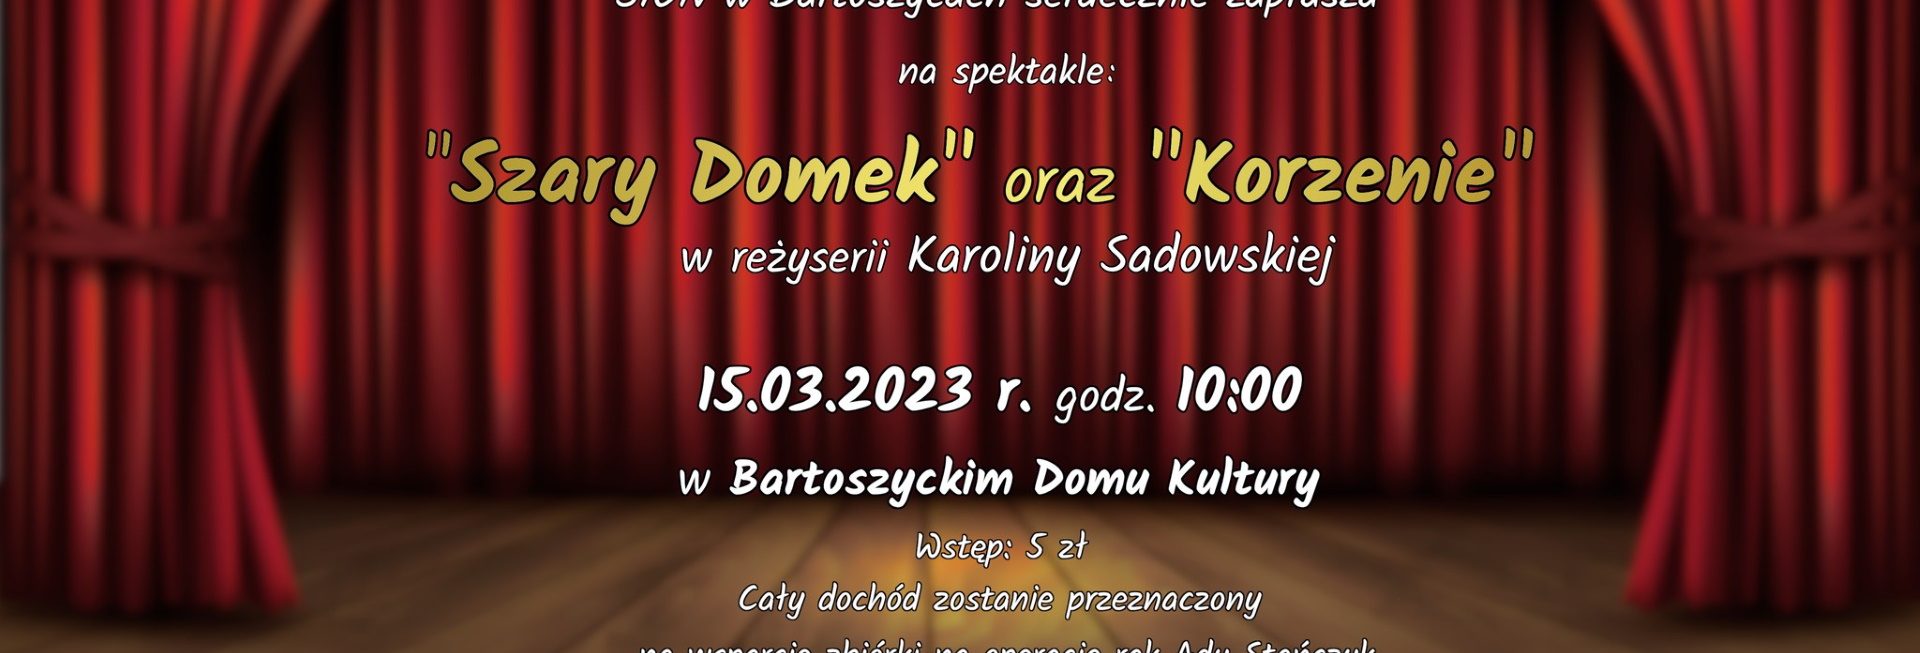 Plakat zapraszający w środę 15 marca 2023 r. do Bartoszyc na spotkanie teatralne dla ADY STAŃCZYK "Szary domek" & "Korzenie" Bartoszyce 2023.